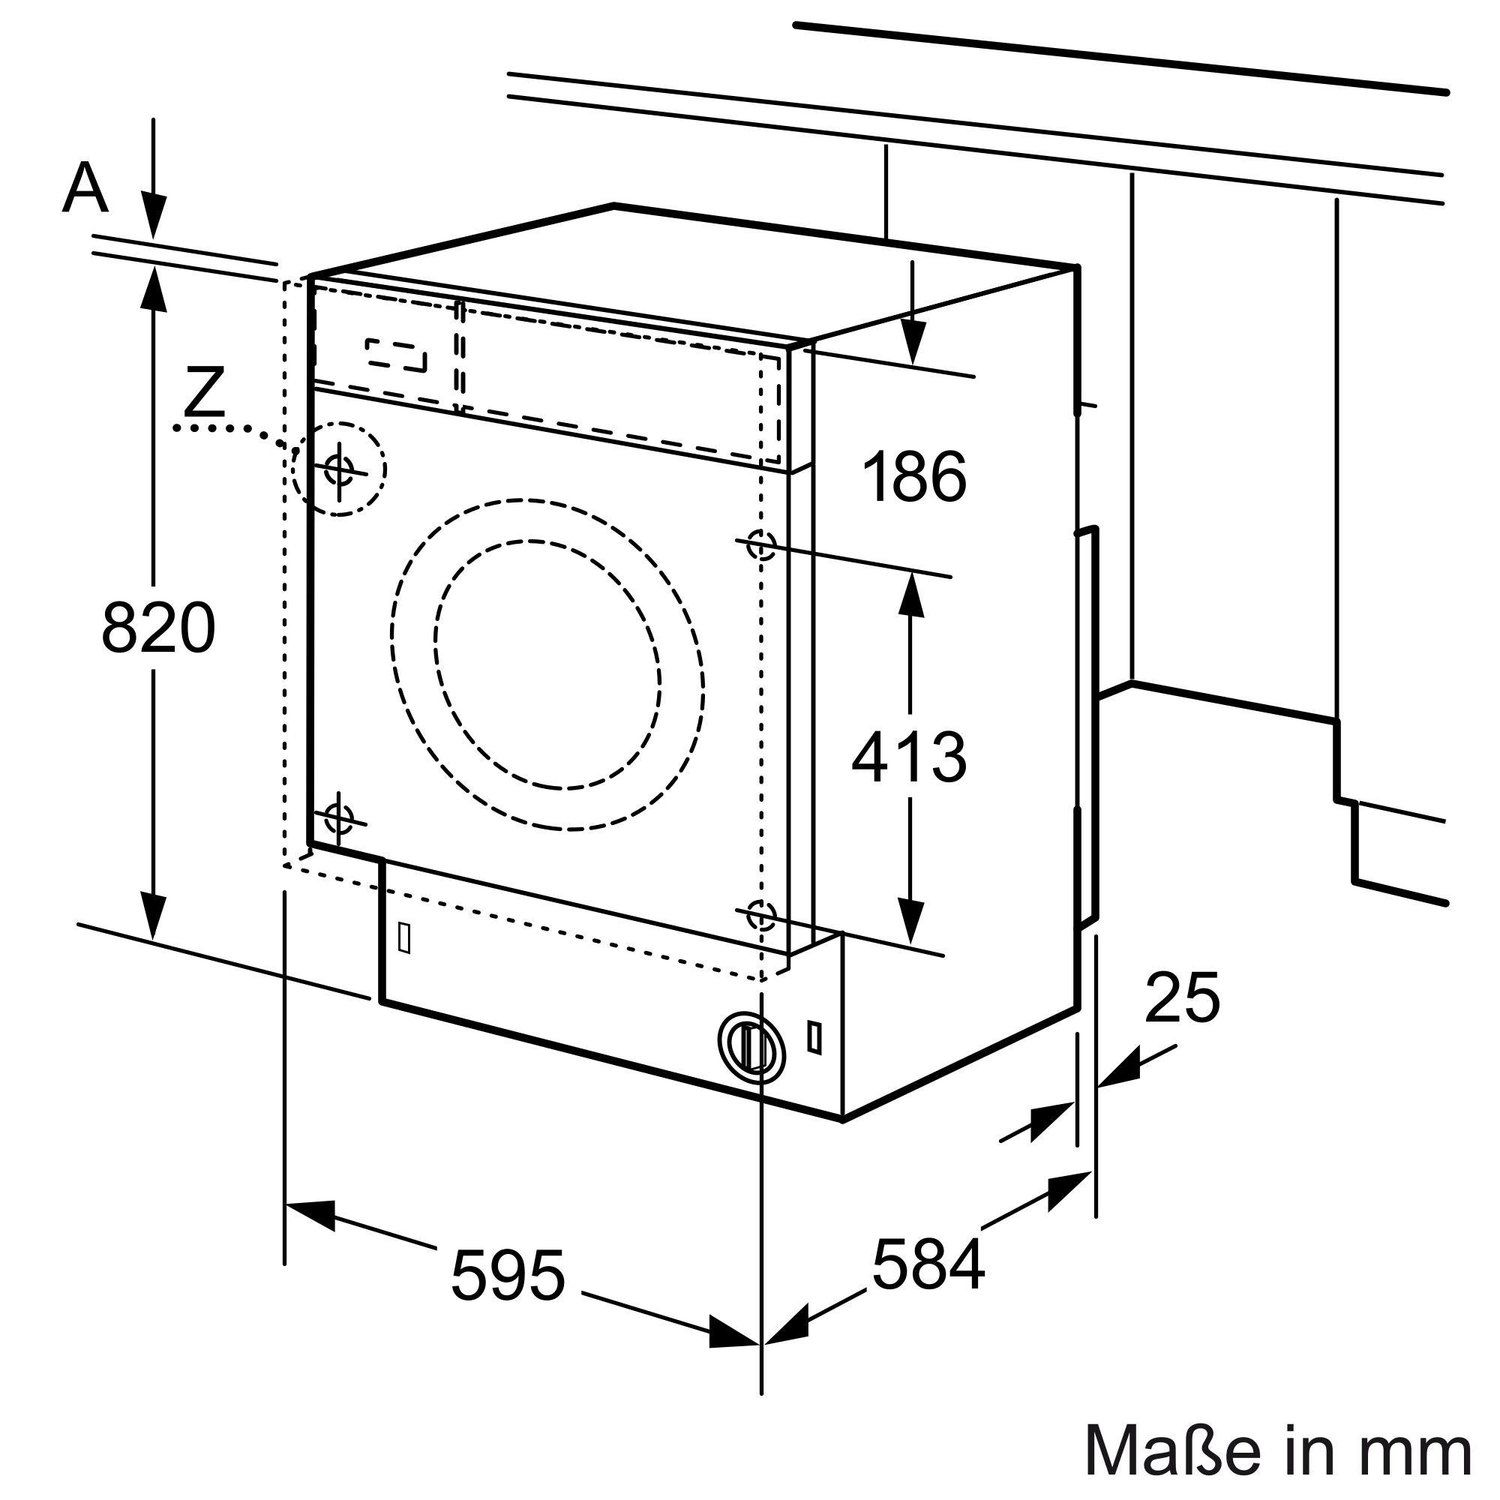 SIEMENS REFURBISHED (*) 9 / 1551 Waschmaschine Serie kg Vormisch-Technologie (9 8000 ÖkoMix U/Min.) kg, mit WK14D543